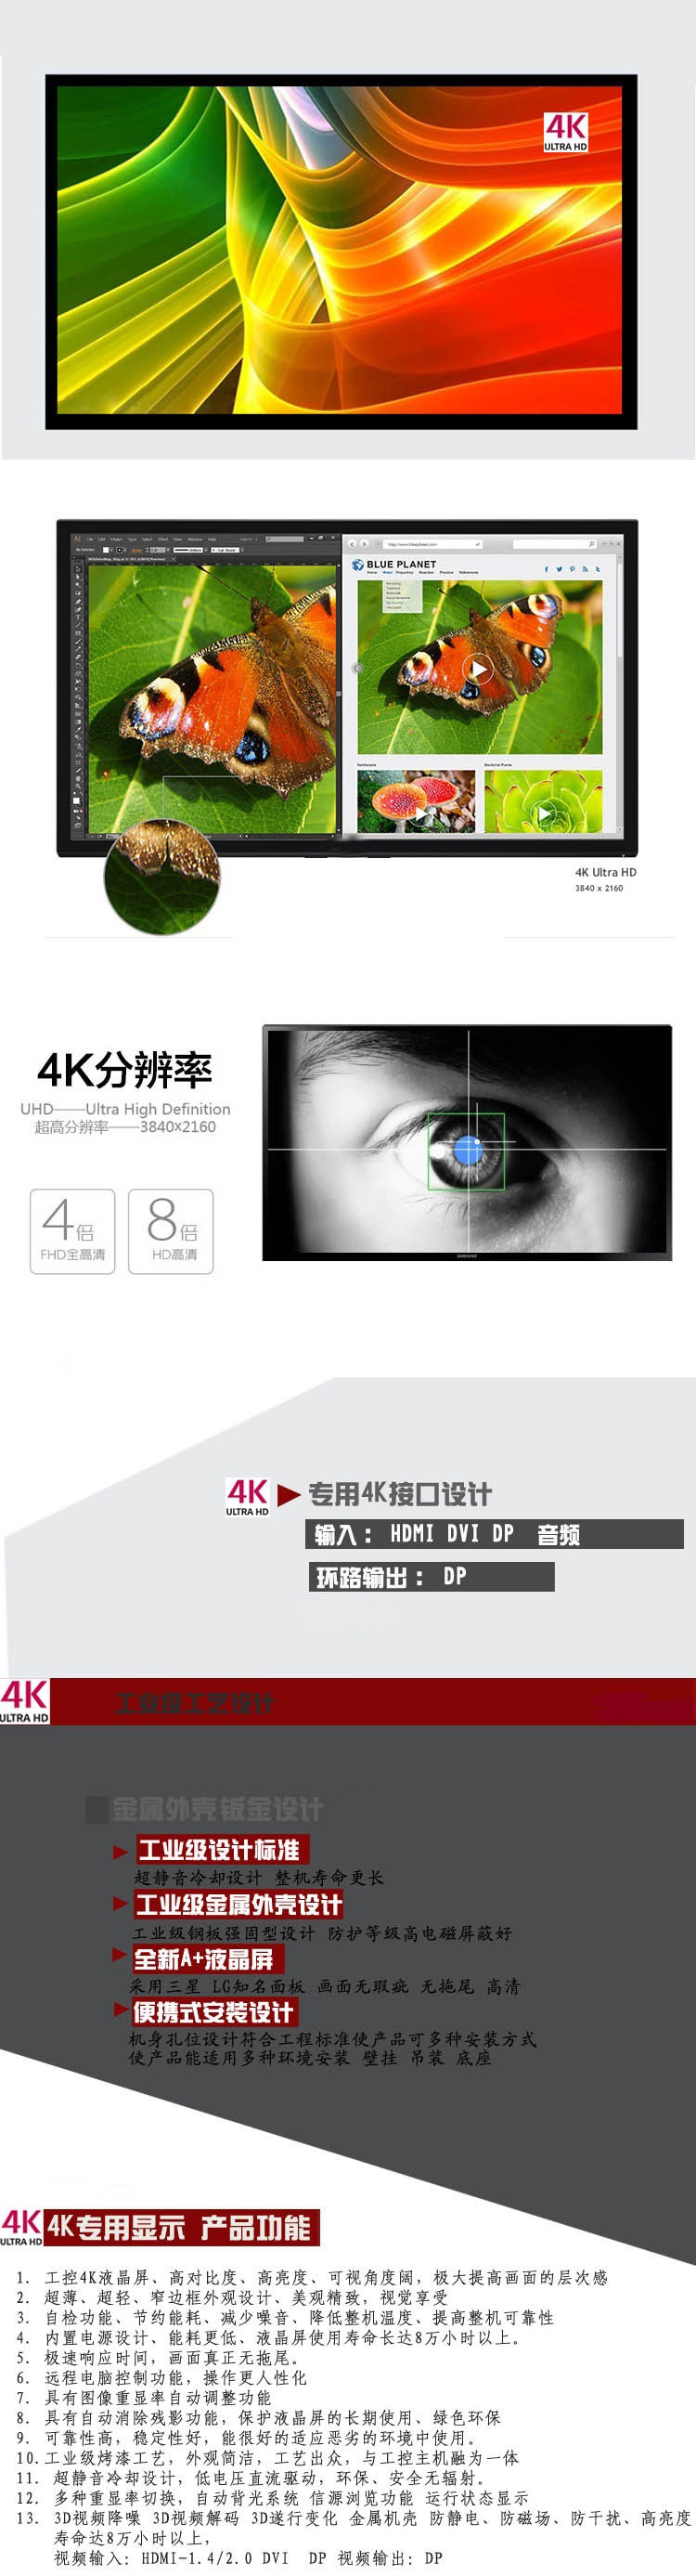 4K高清监视器